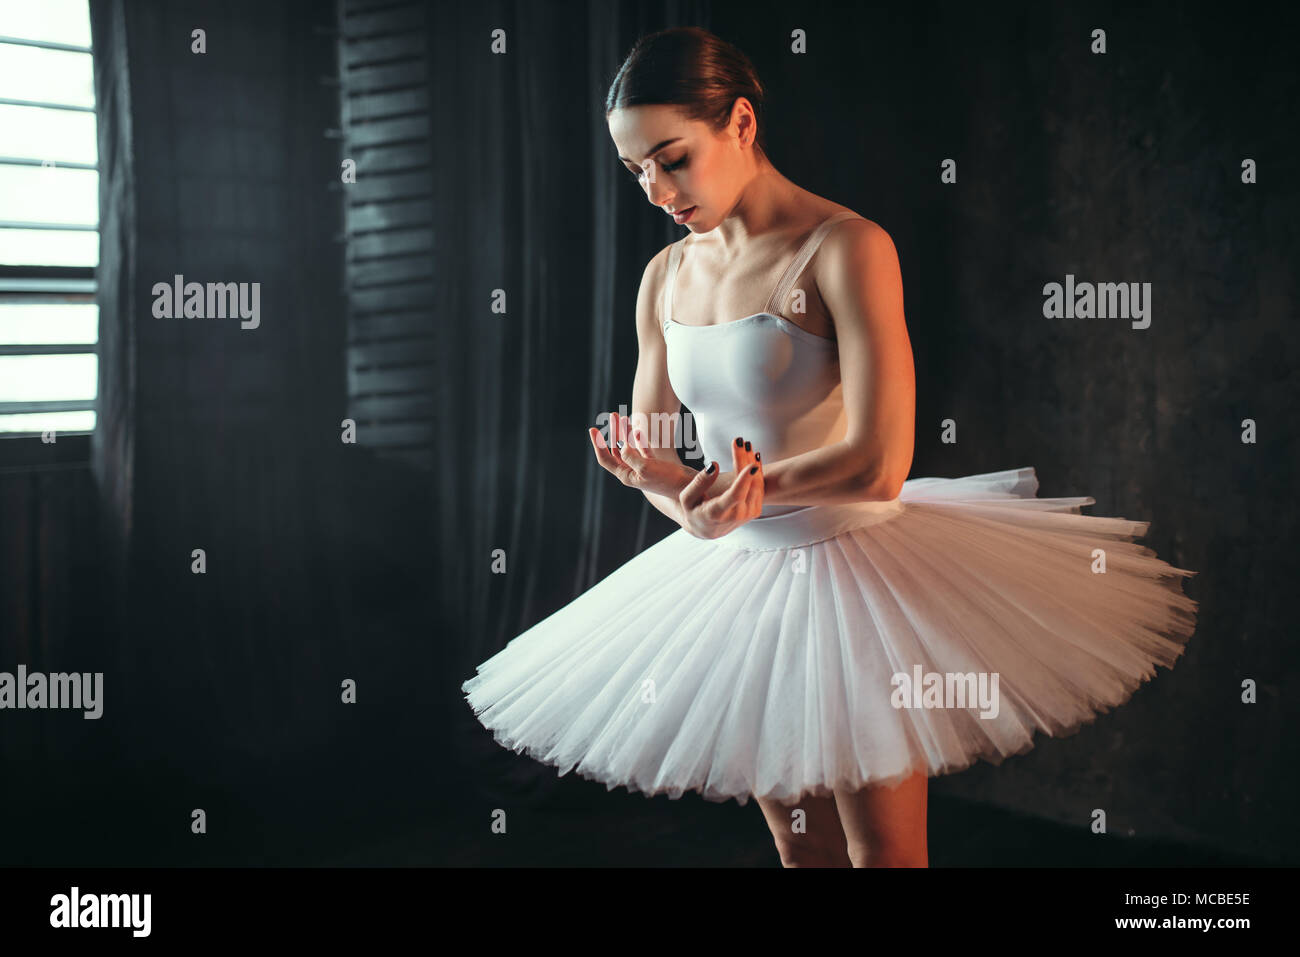 Ballerina dancing in studio against window Stock Photo